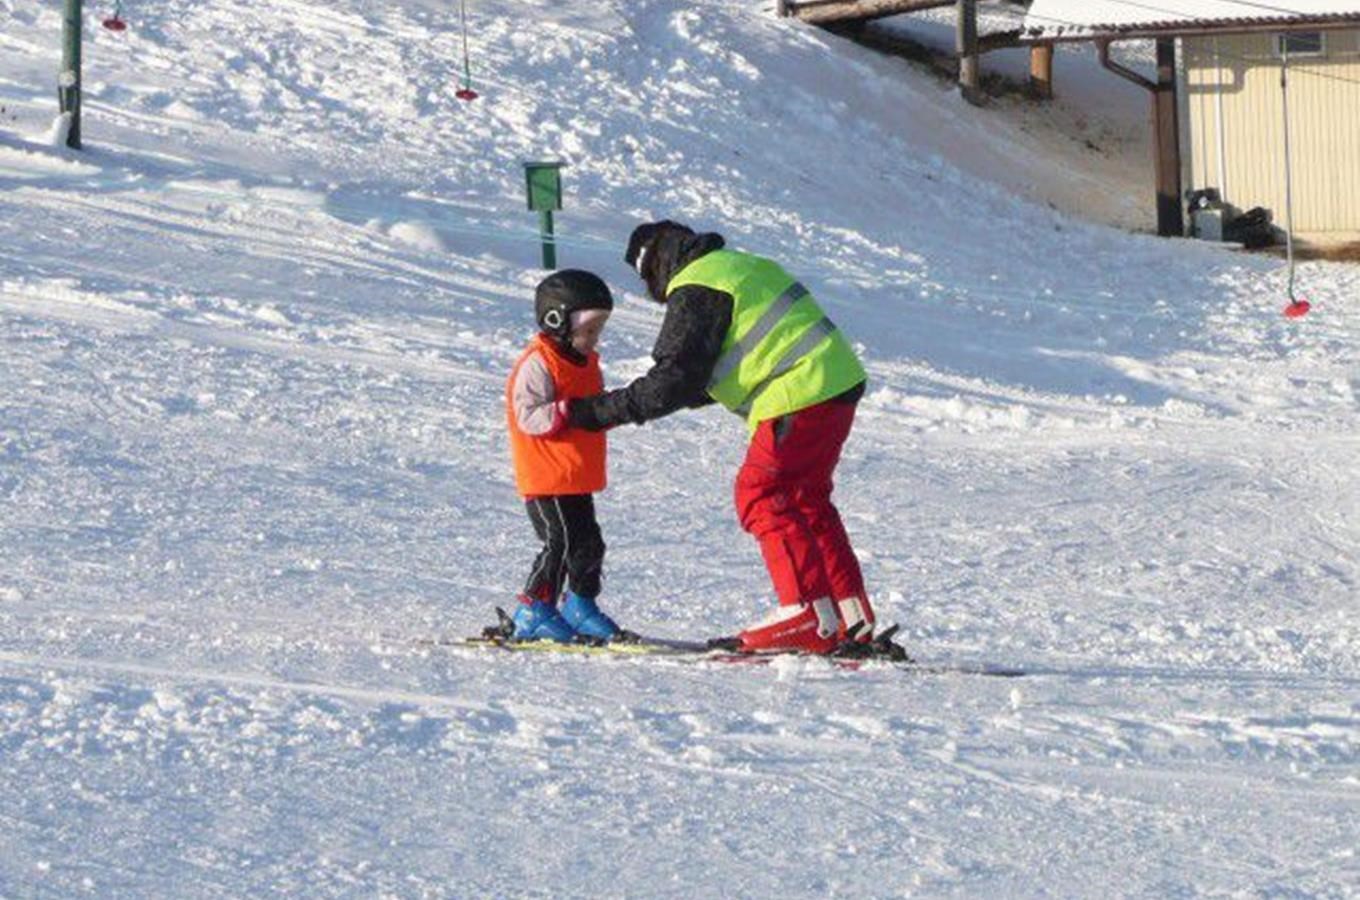 Mendl-ski Břestek - lyžařský areál nejen pro začátečníky